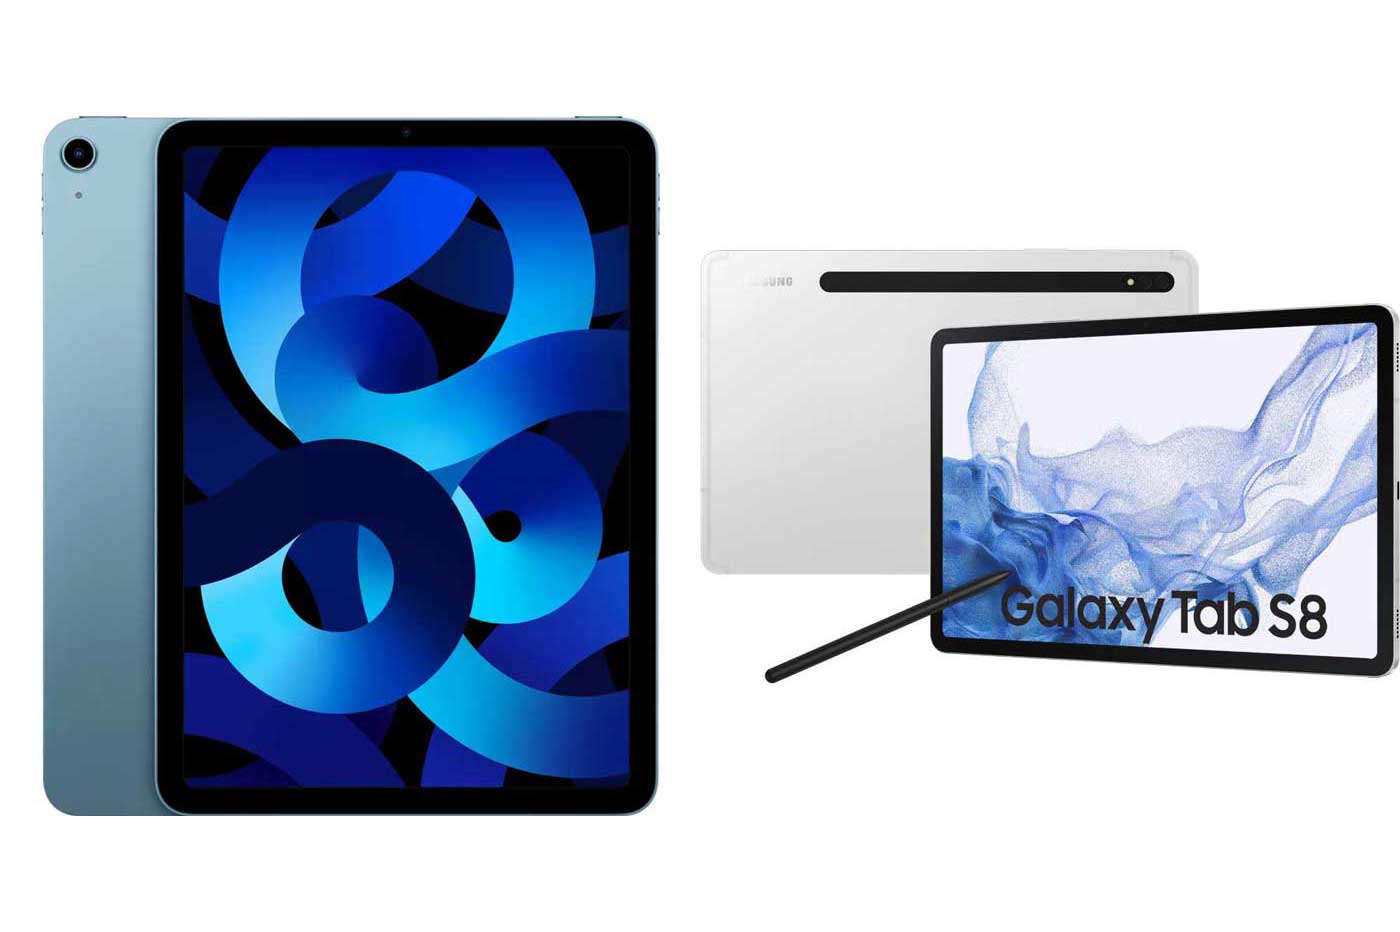 Quelles sont les caractéristiques de la tablette Samsung Galaxy